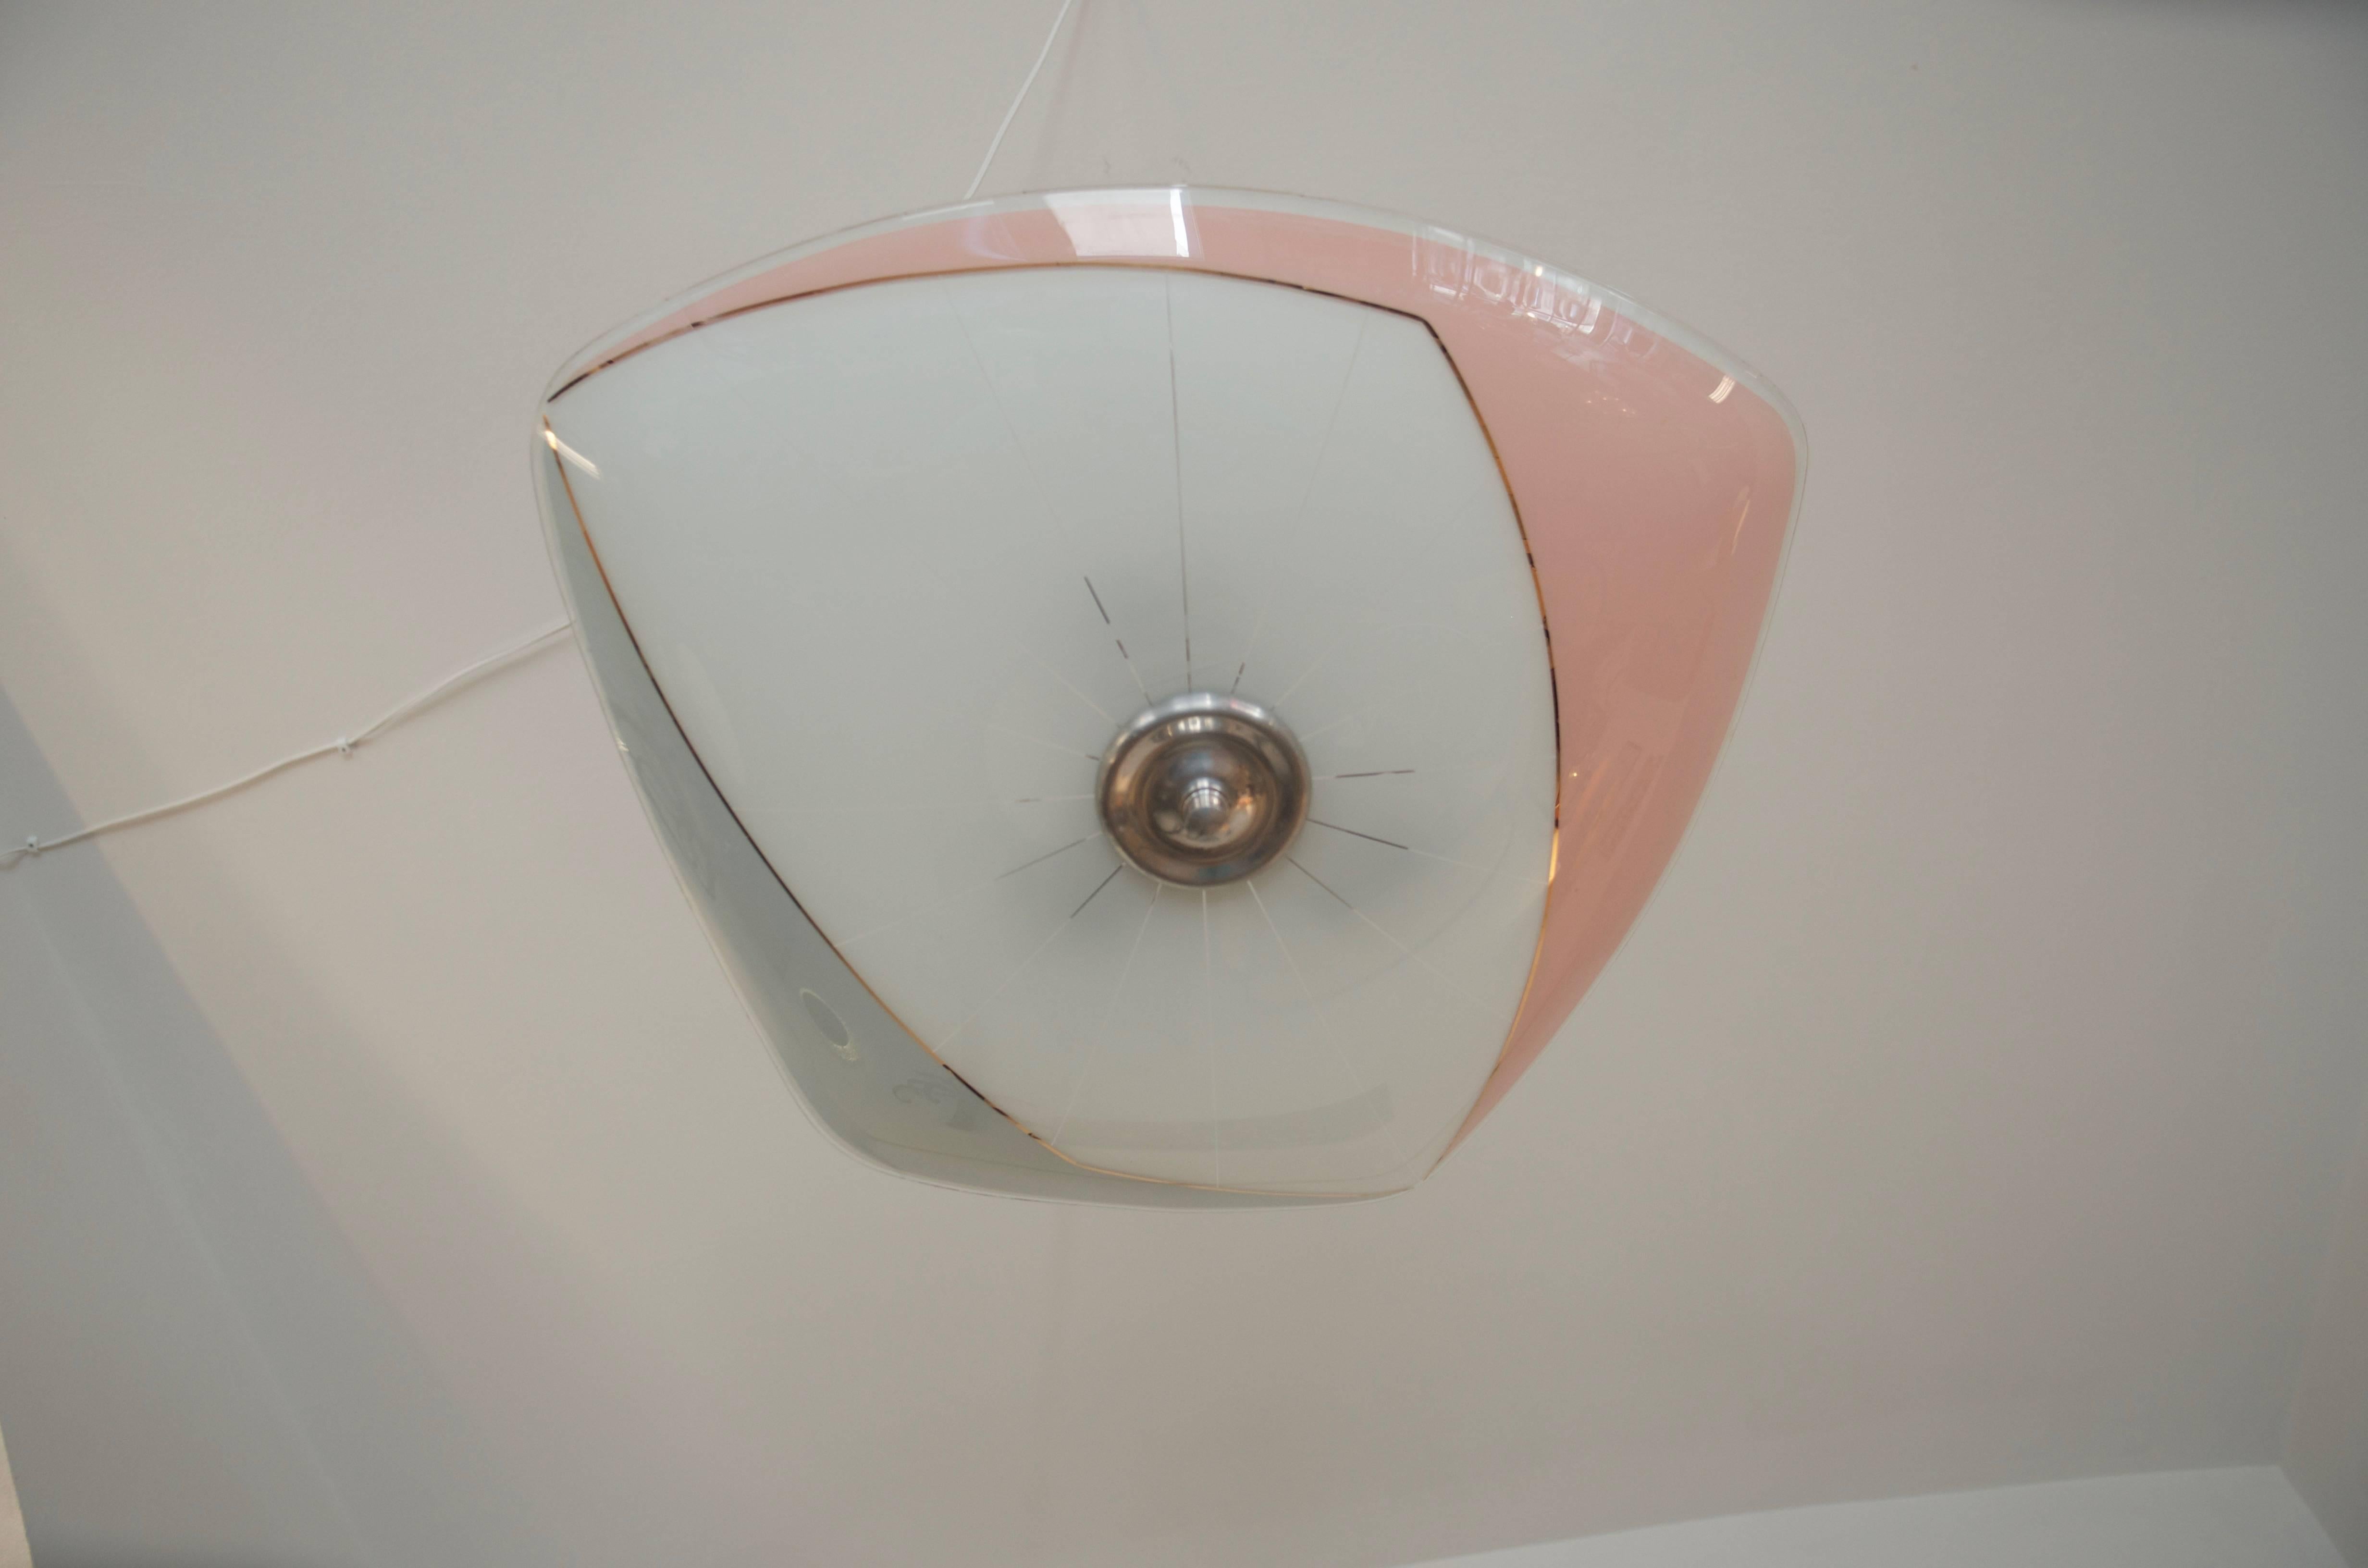 Este colgante se diseñó para exponerlo en el Pabellón de Checoslovaquia de la Exposición Universal de Bruselas de 1958.
La pantalla está en muy buen estado, sin arañazos, grietas ni astillas; los herrajes de aluminio del colgante son originales y